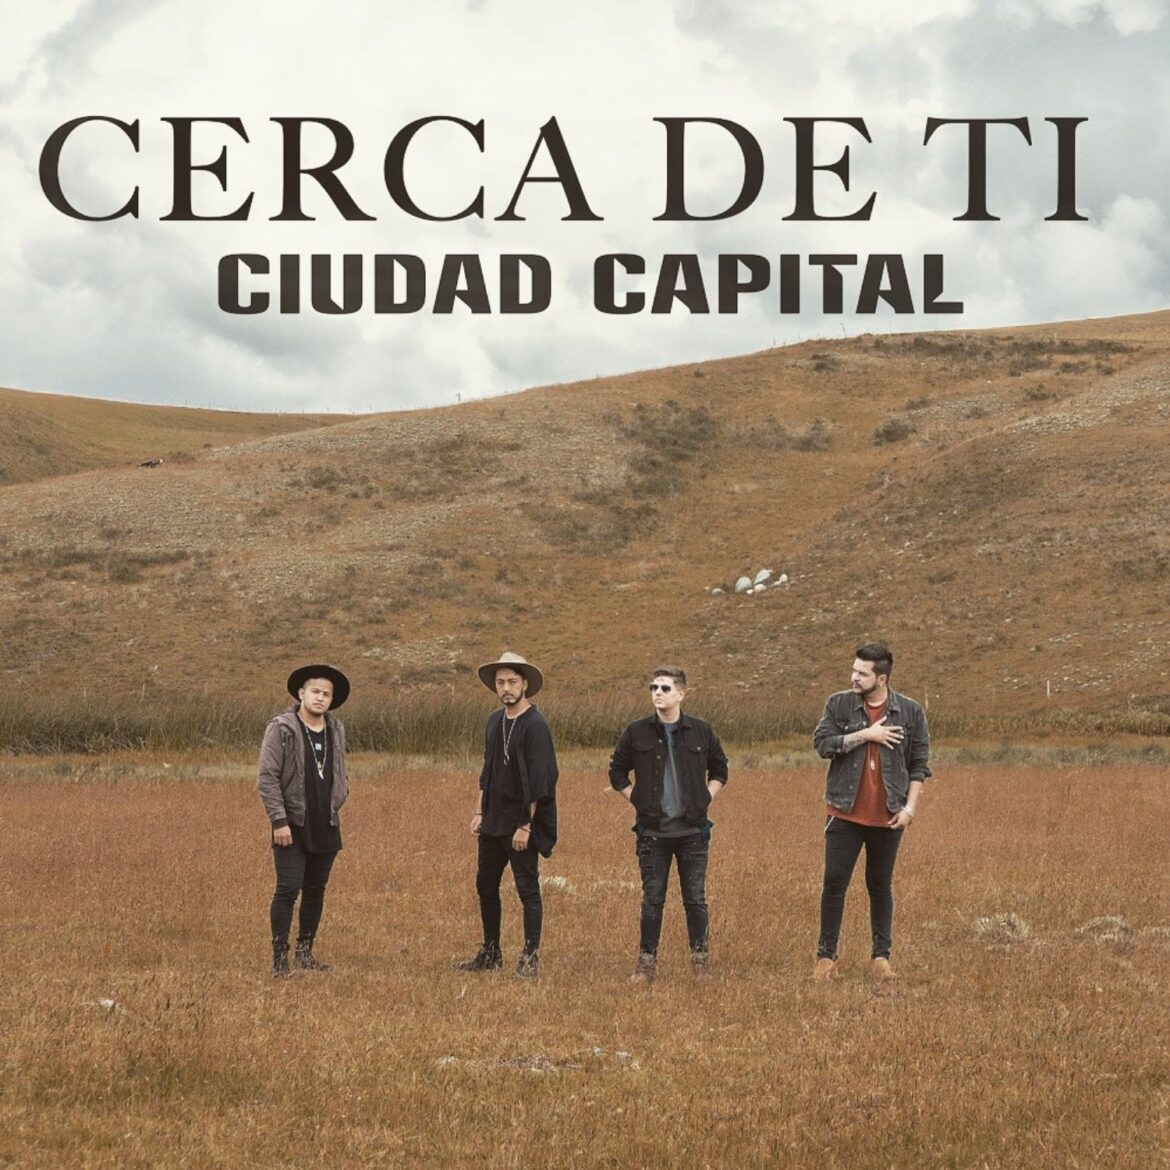 La talentosa banda colombiana Ciudad Capital presenta su primer sencillo del 2022 titulado “Cerca de Ti”